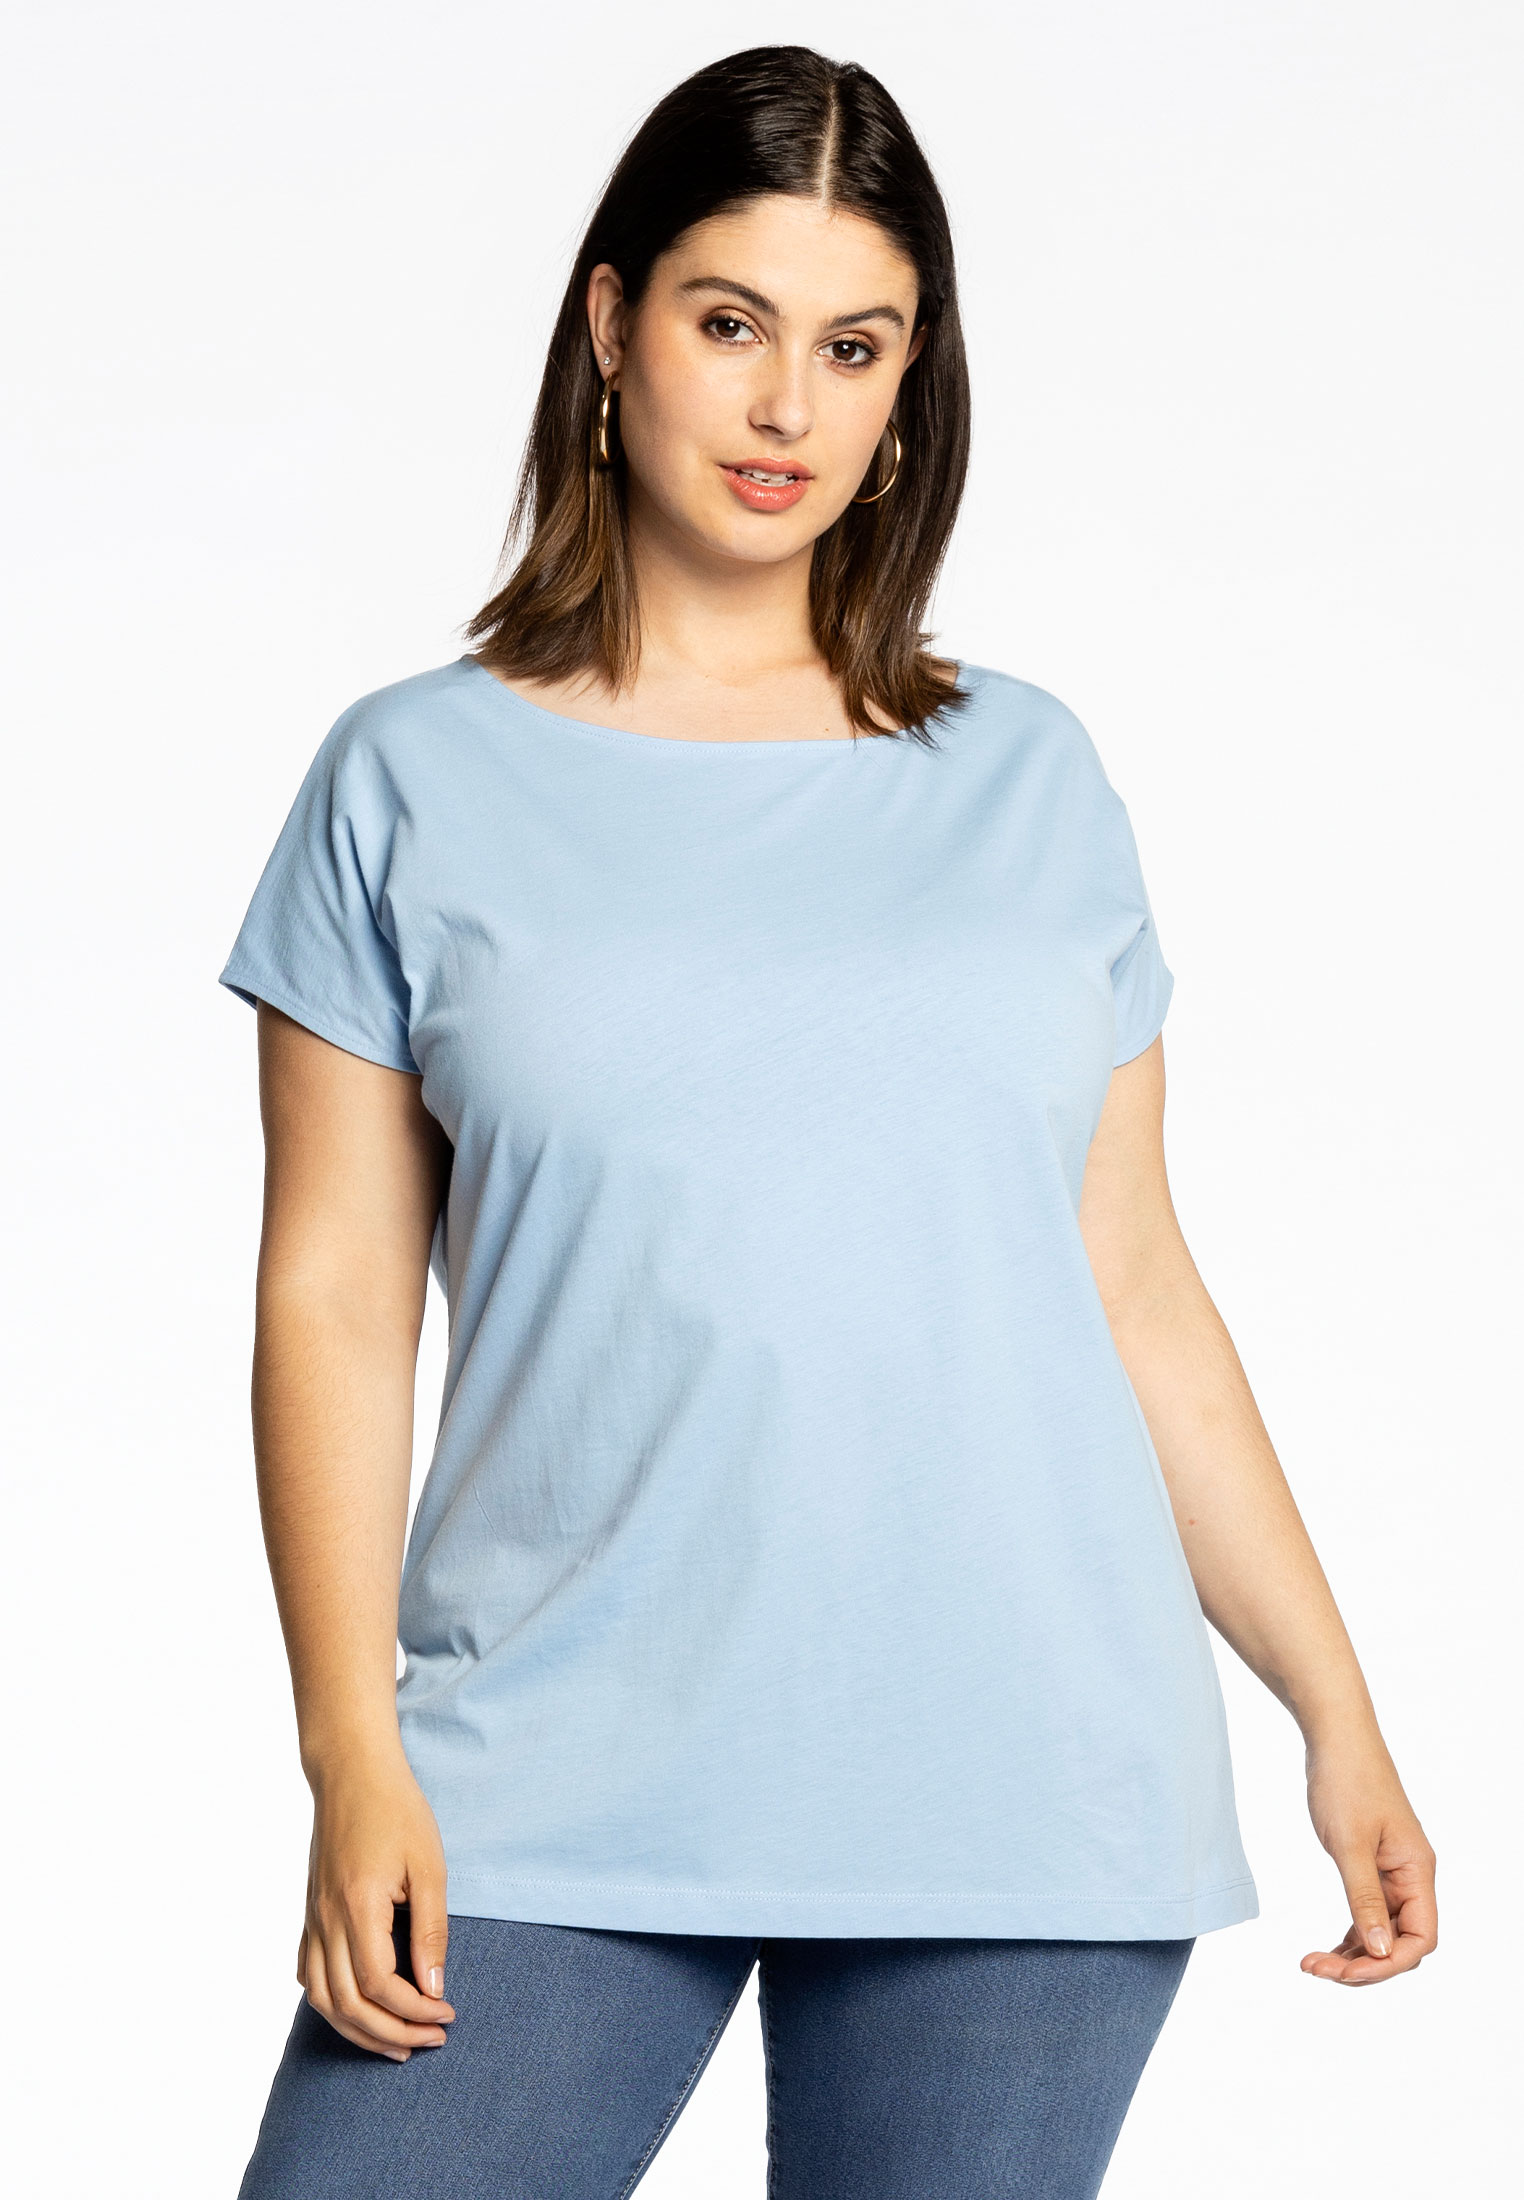 Basic T-shirt kapmouwen COTTON 58/60 light blue